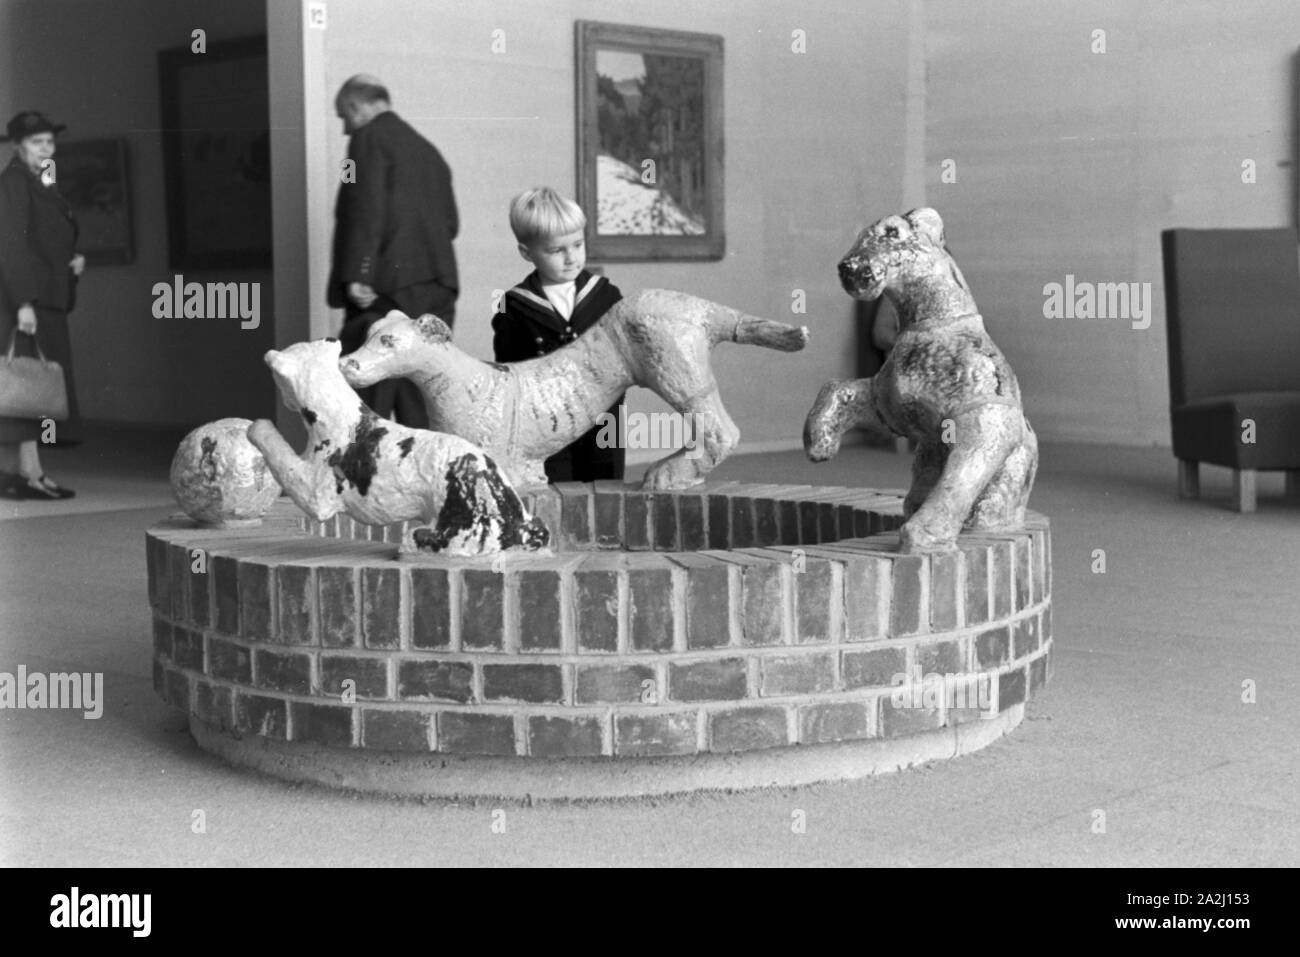 Kunstwerk in der Künstlersiedlung Düsseldorf Schlageterstadt, Deutschland 1930er Jahre. Kunstwerke in der Kolonie Künstler Düsseldorf Schlageterstadt, Deutschland 1930. Stockfoto